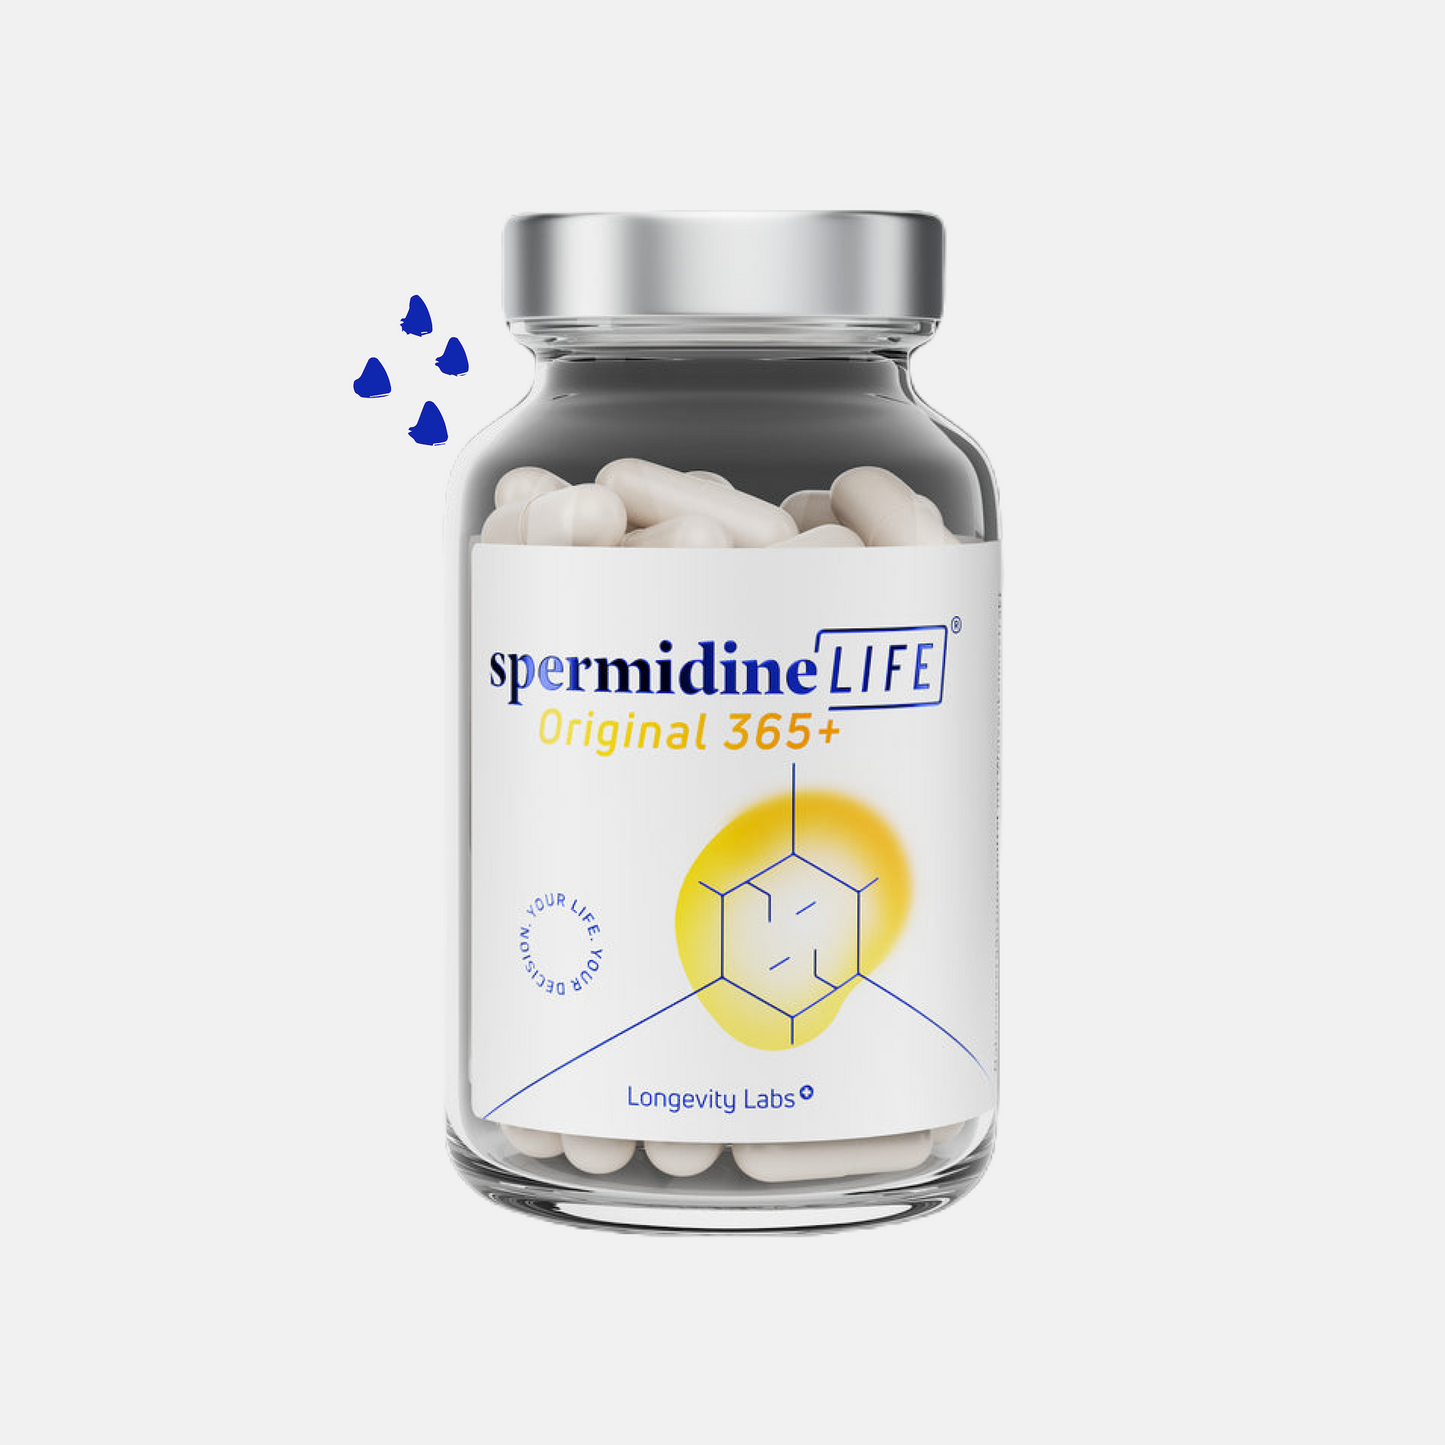 SpermidineLife Original - 2mg